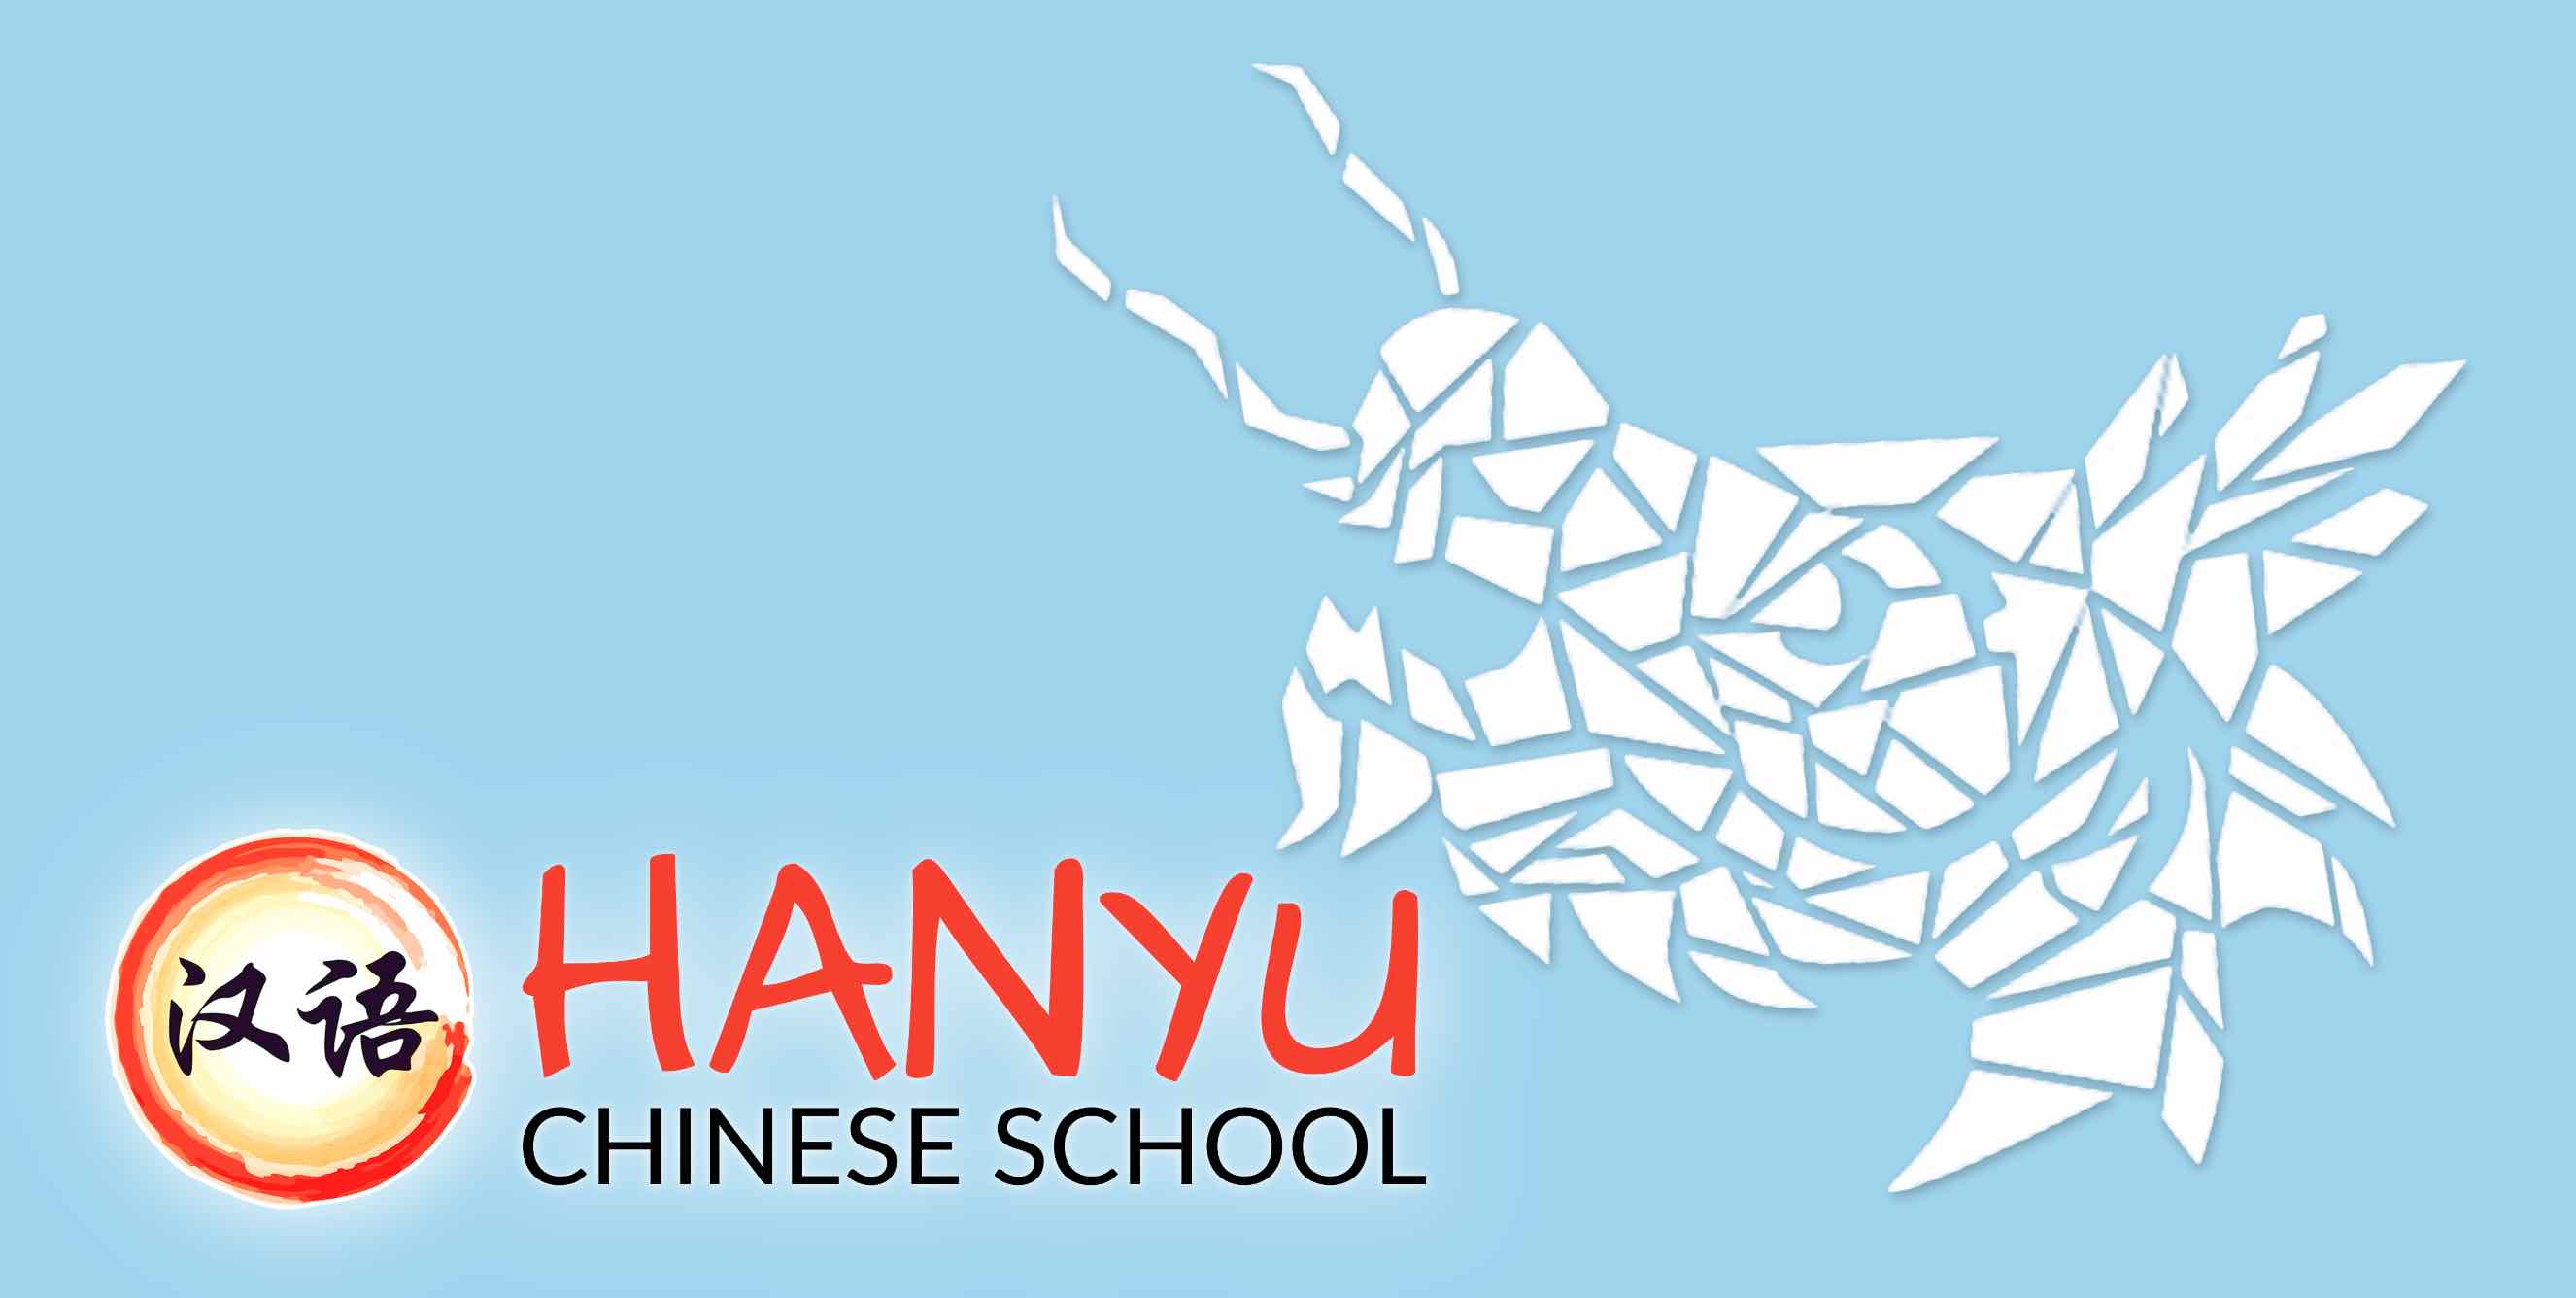 Draggon y Hanyu Chinese School